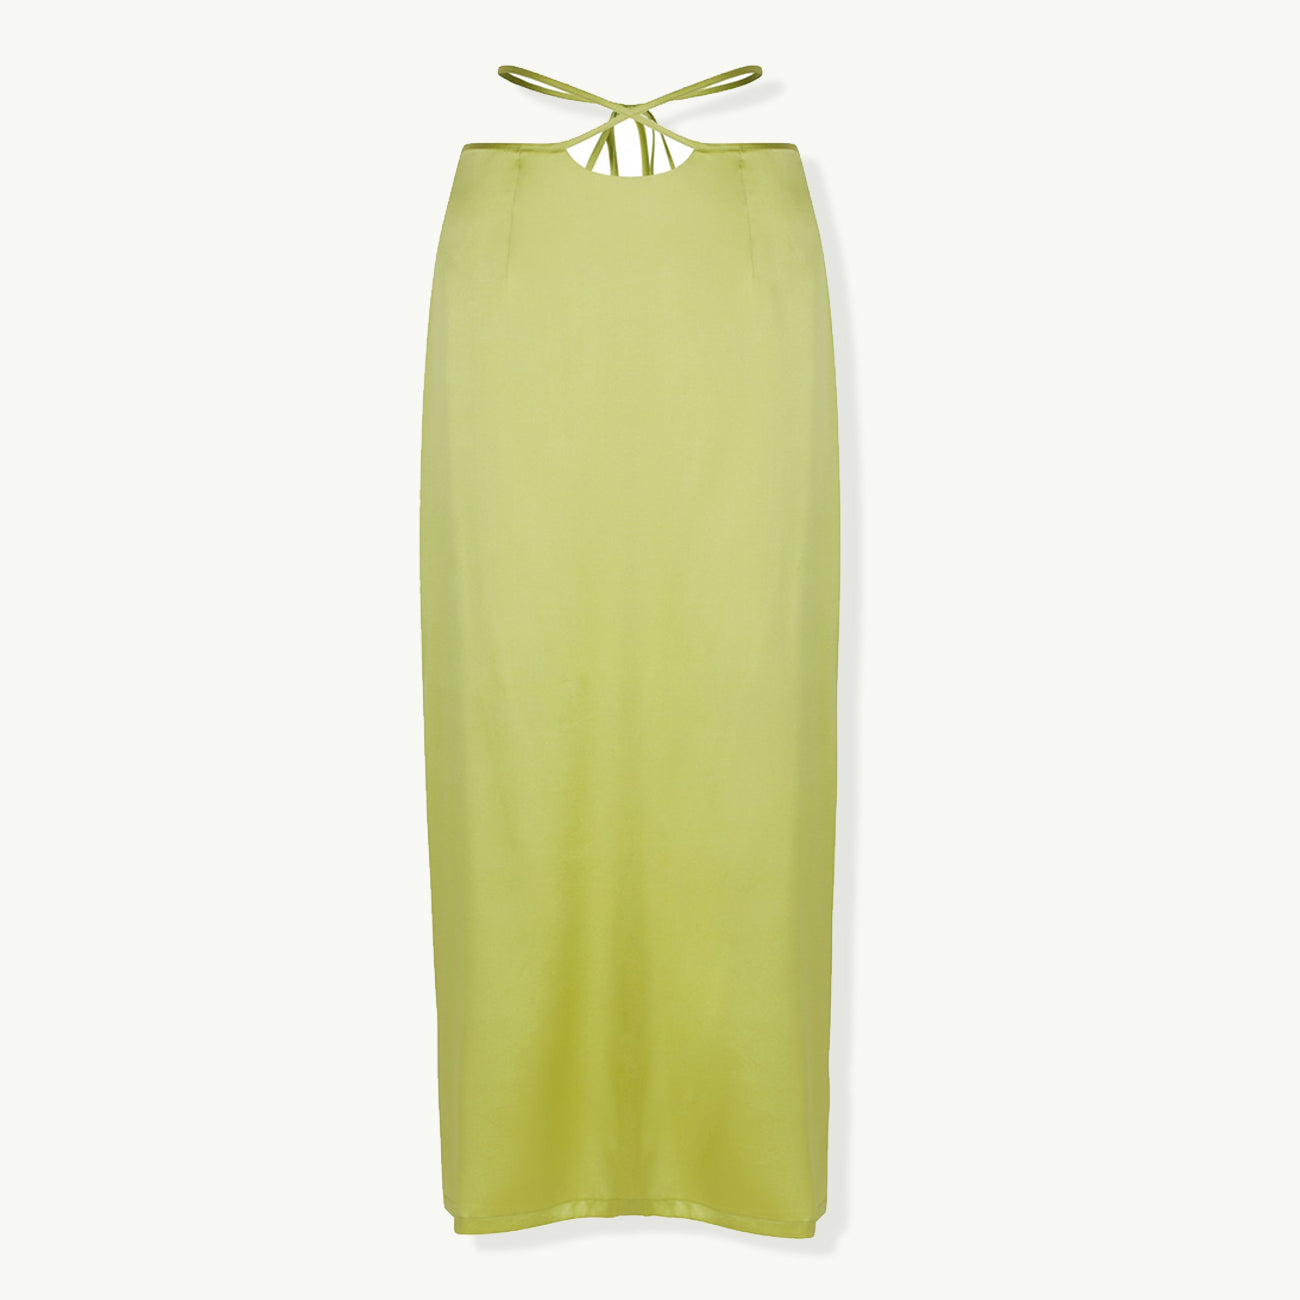 Marrika Skirt - Lime